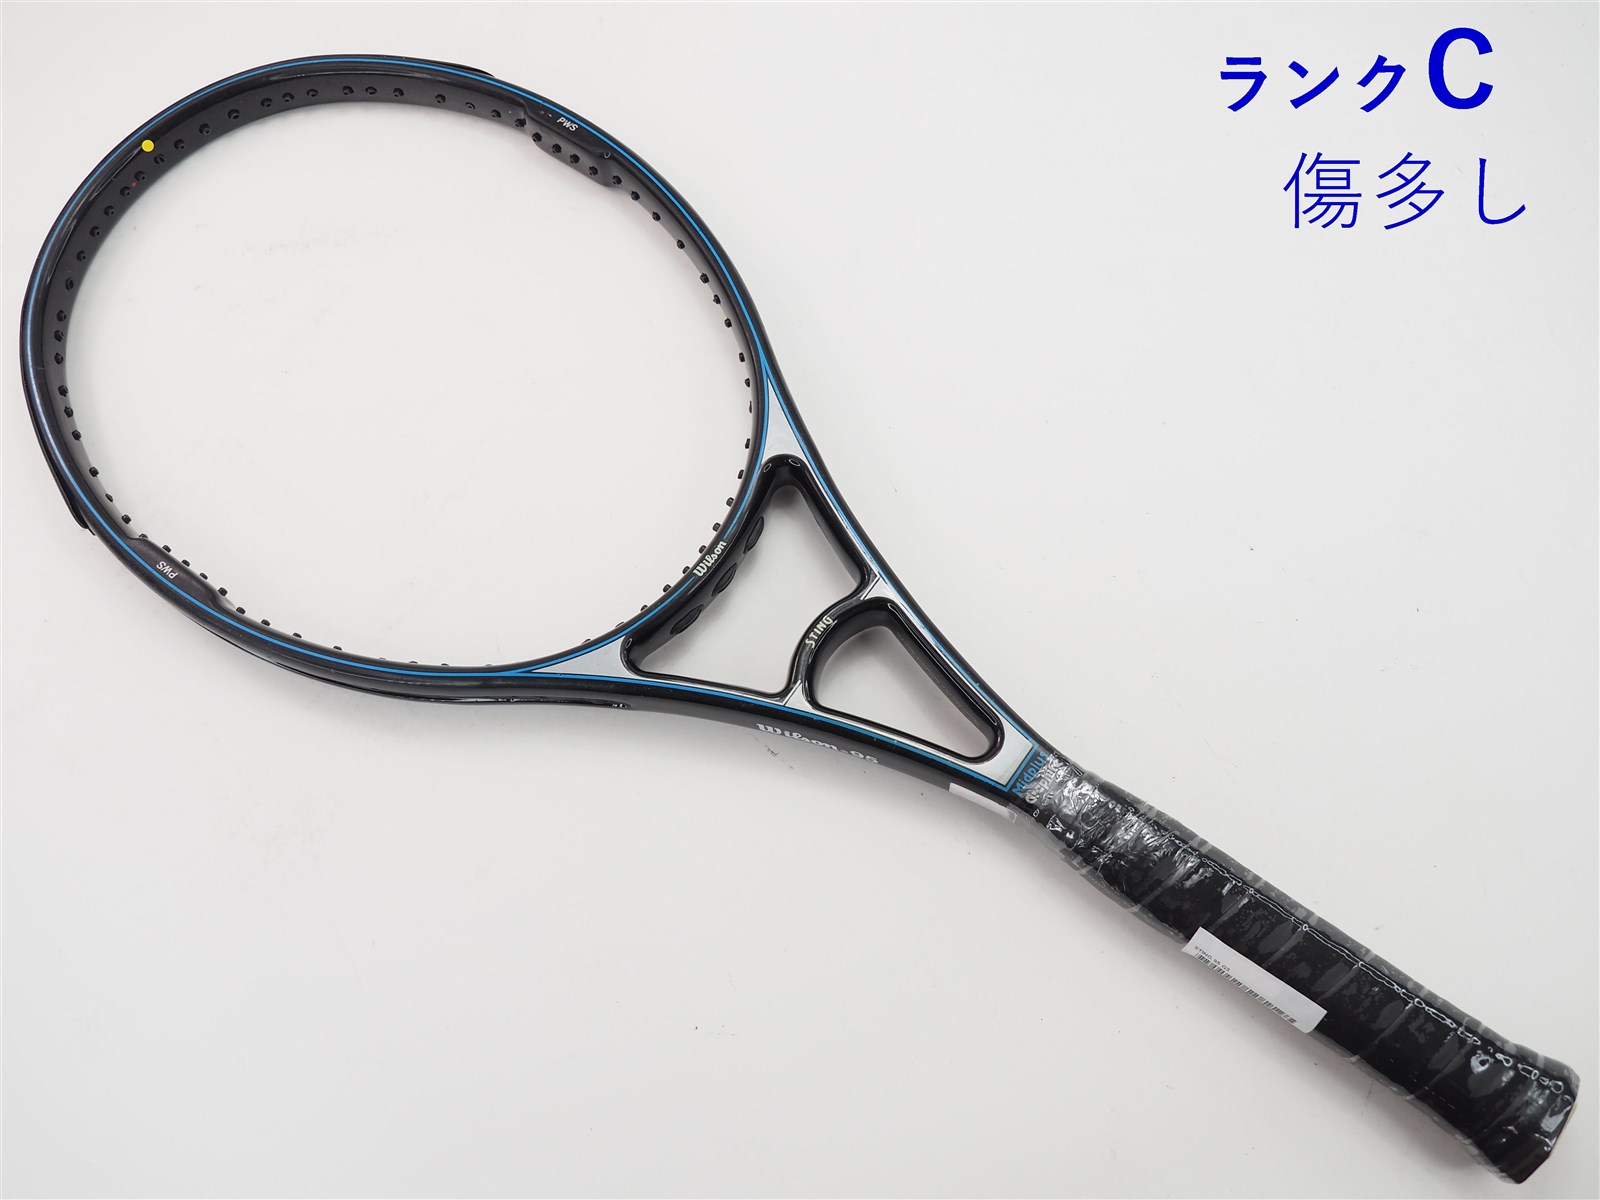 テニスラケット ウィルソン スティング 2 85 (G3相当)WILSON STING 2 8585平方インチ長さ